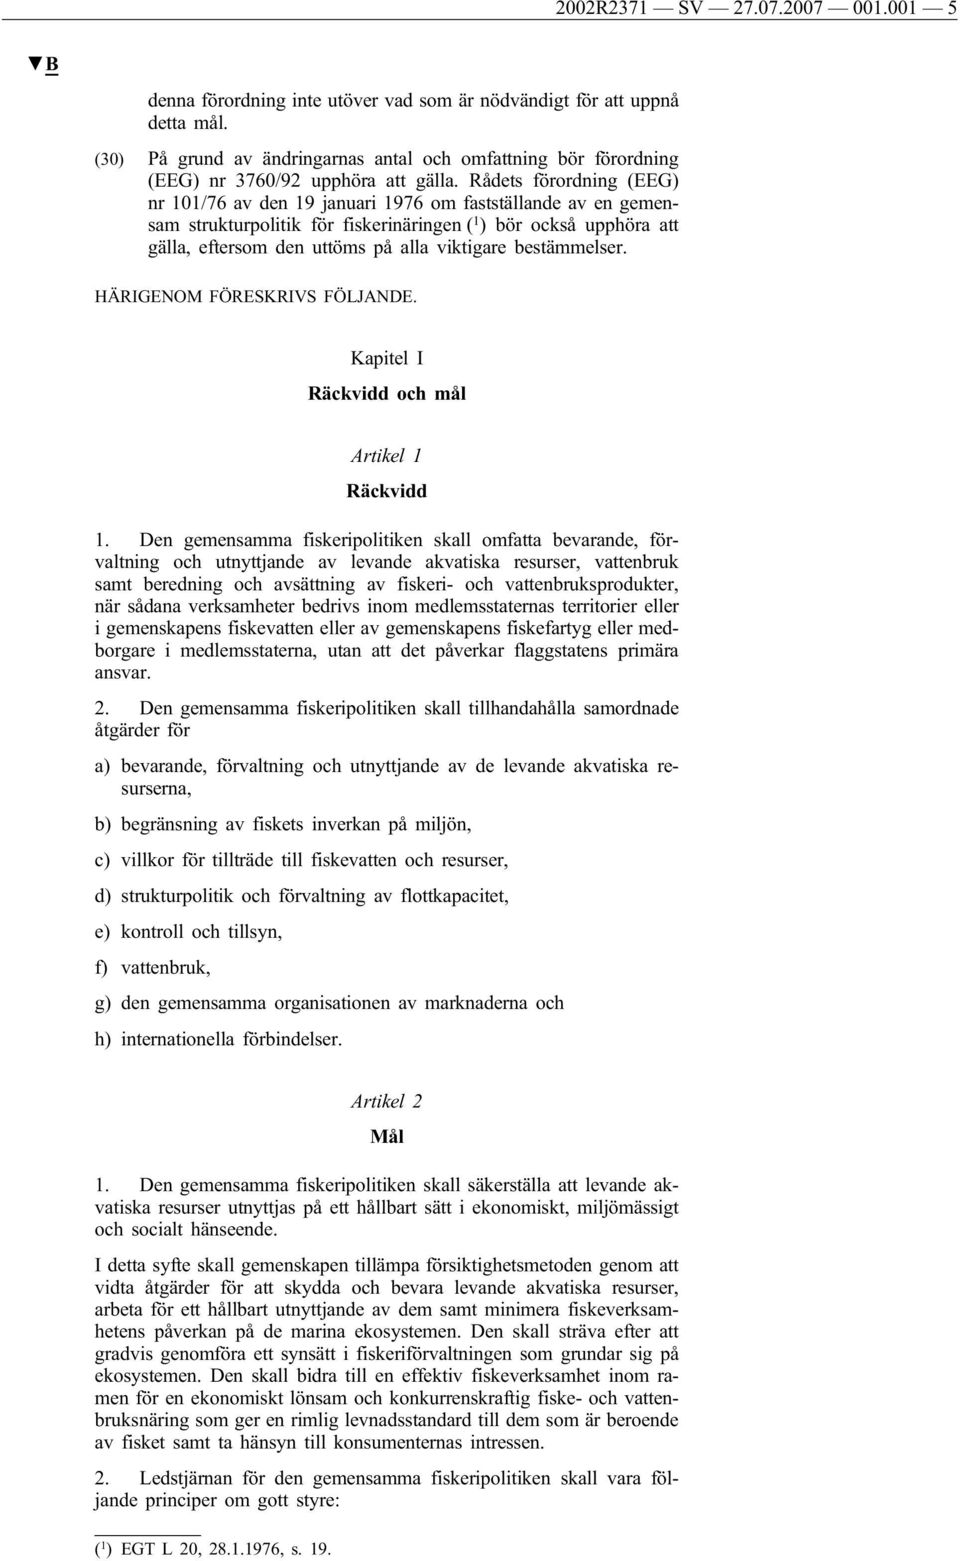 Rådets förordning (EEG) nr 101/76 av den 19 januari 1976 om fastställande av en gemensam strukturpolitik för fiskerinäringen ( 1 ) bör också upphöra att gälla, eftersom den uttöms på alla viktigare